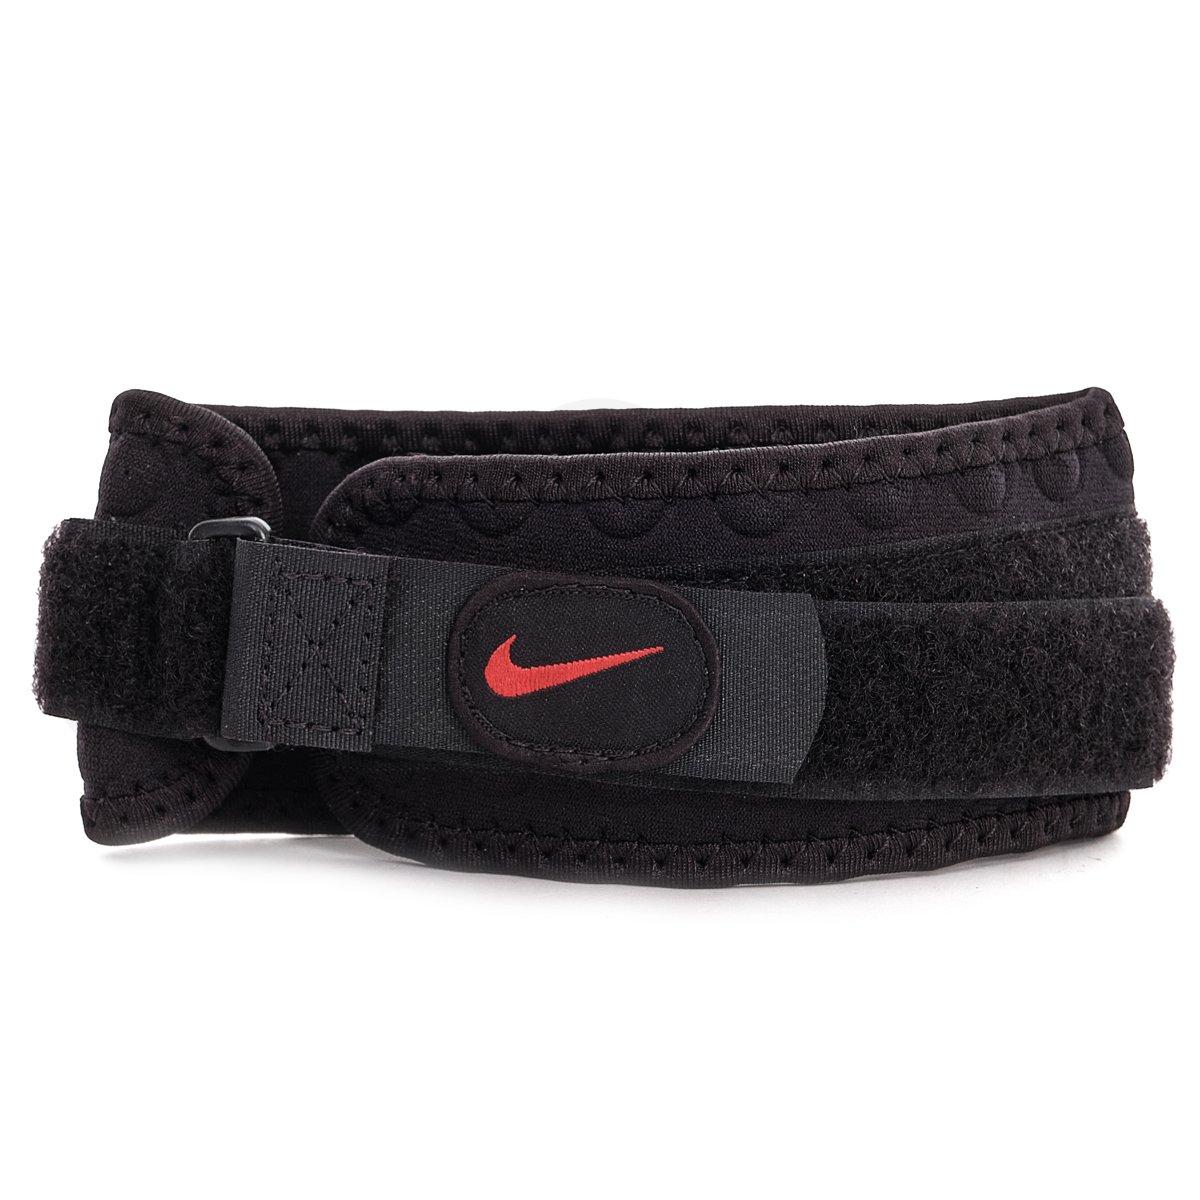 Bandáž Nike FE010 - černá